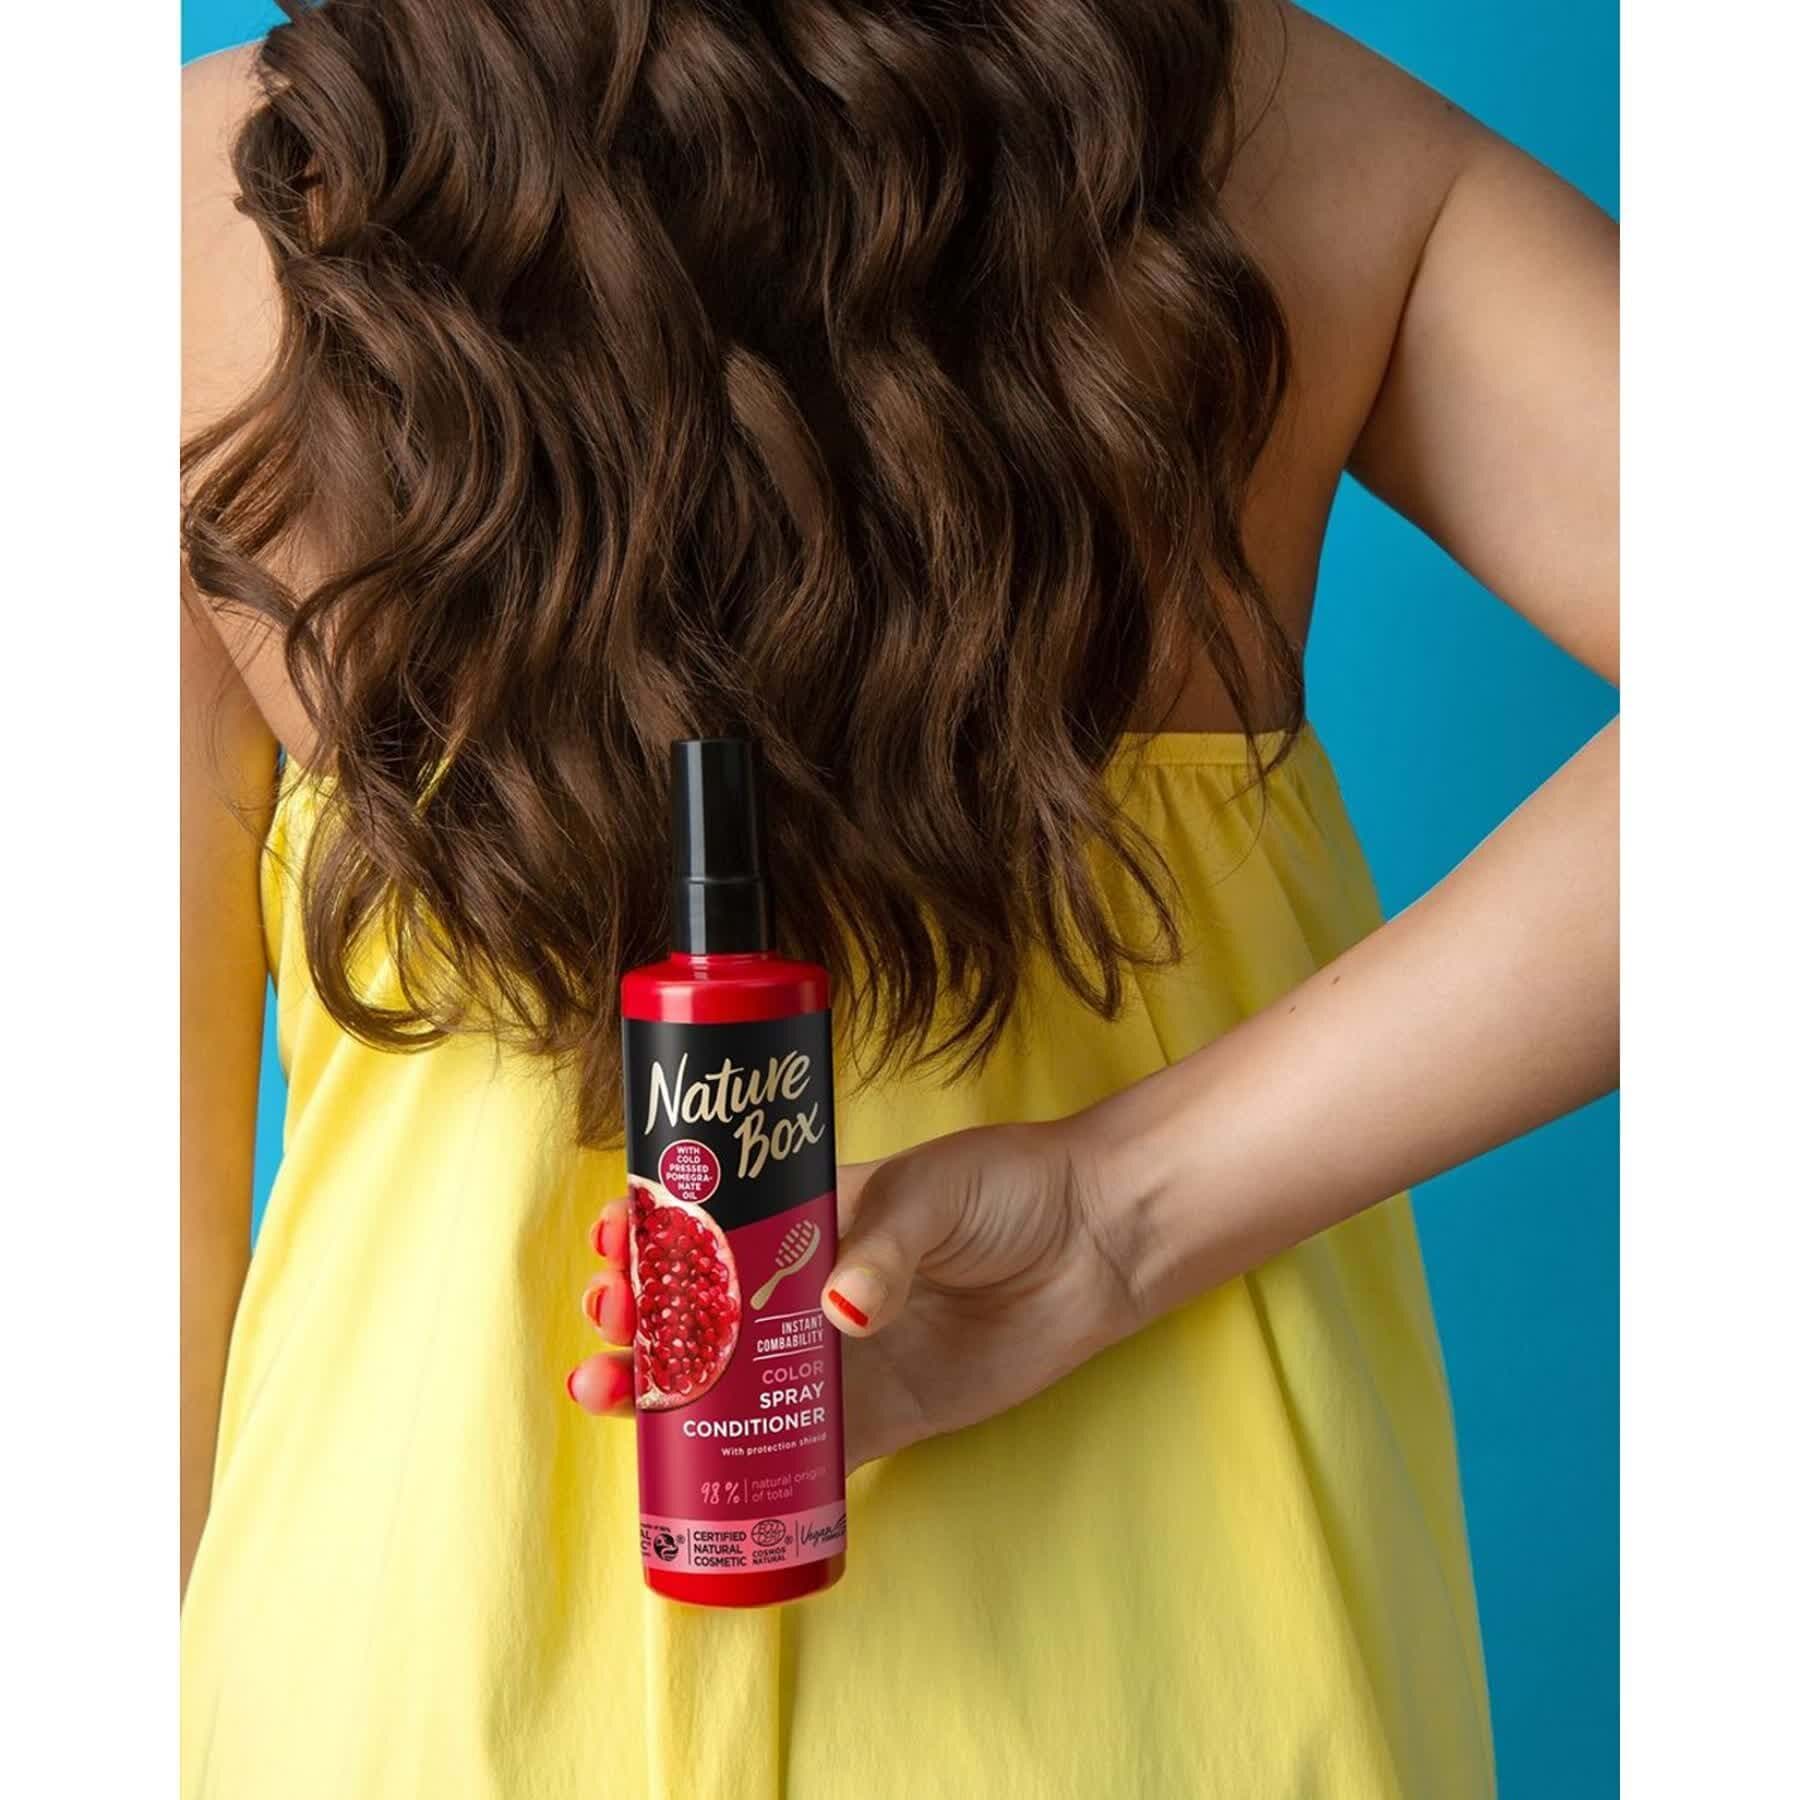 Экспресс кондиционер Nature Box для окрашенных волос с гранатовым маслом холодного отжима 200 мл.